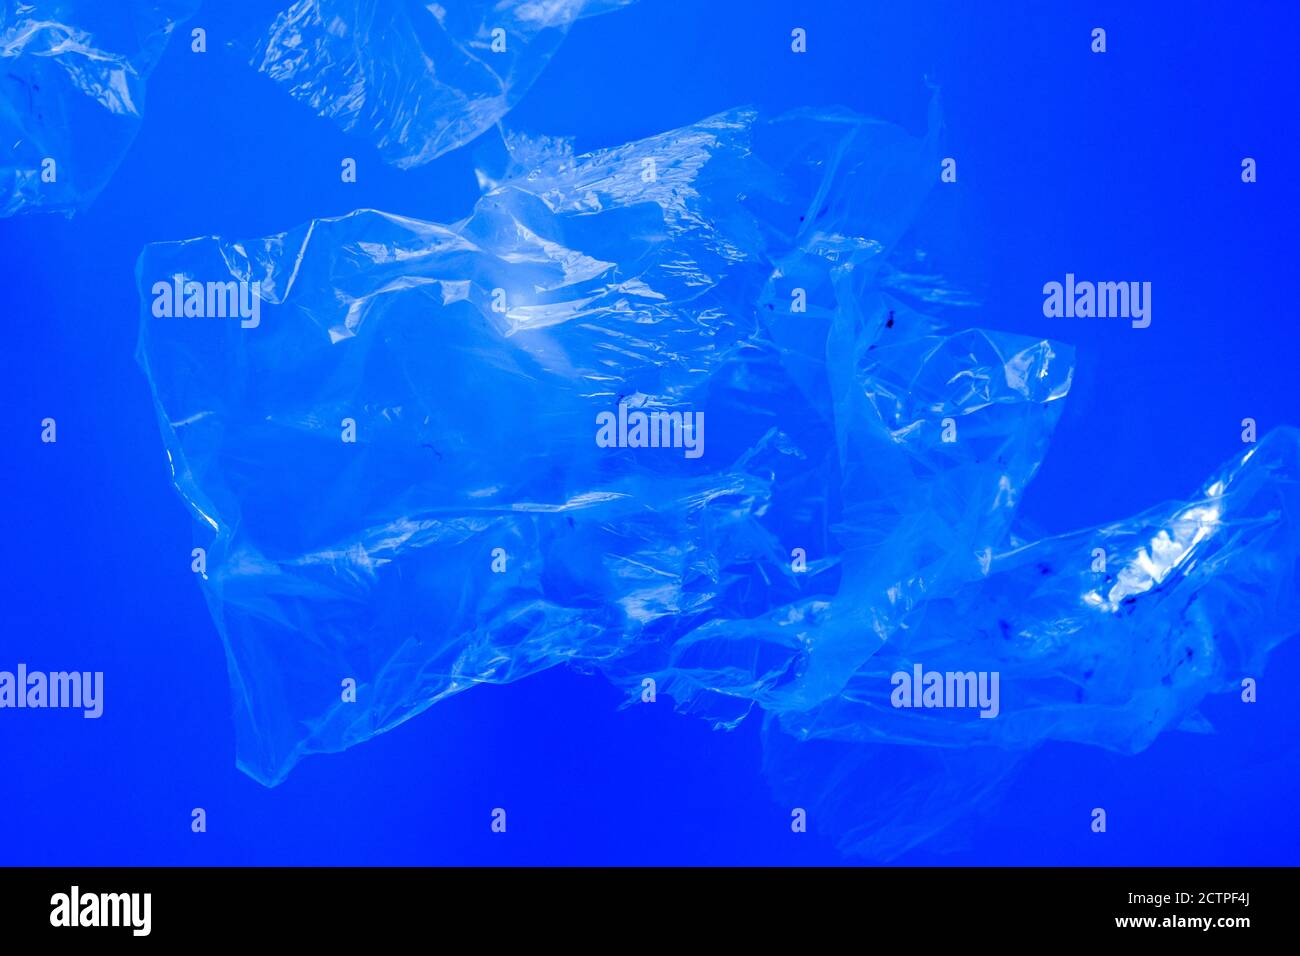 Sacs en plastique transparent flottant sous l'eau bleue de l'océan, pollution par des déchets plastiques non biodégradables, danger pour la faune marine Banque D'Images